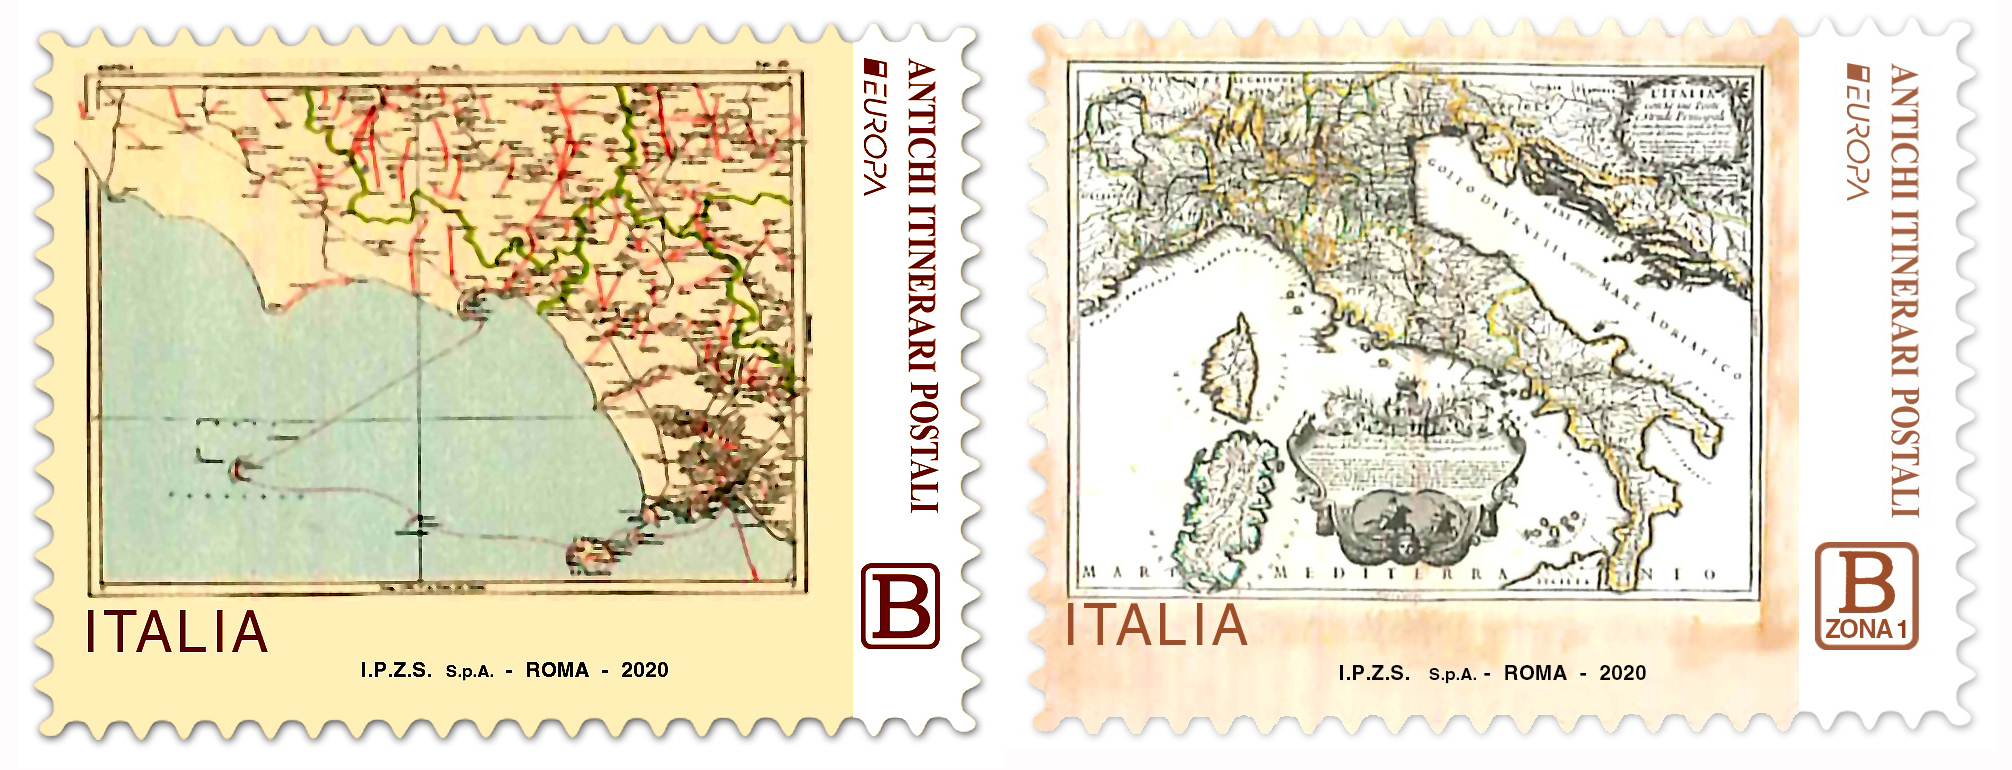 Brutti, inutili, incomprensibili: ecco i 2 francobolli italiani per il giro Europa dedicato agli Antichi itinerari postali